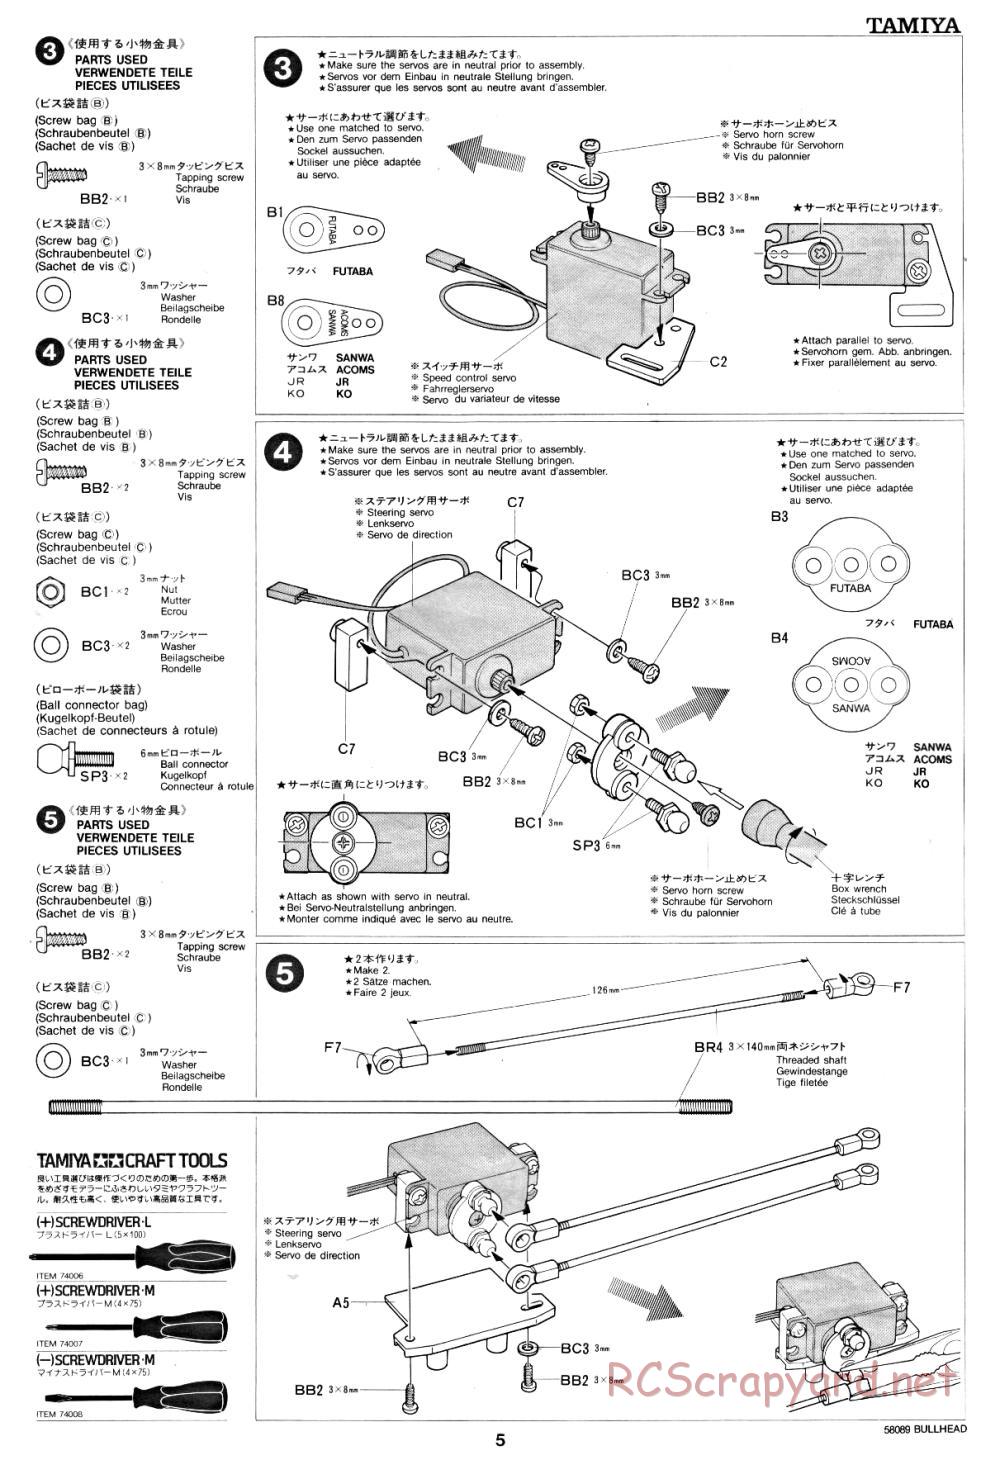 Tamiya - Bullhead - 58089 - Manual - Page 5